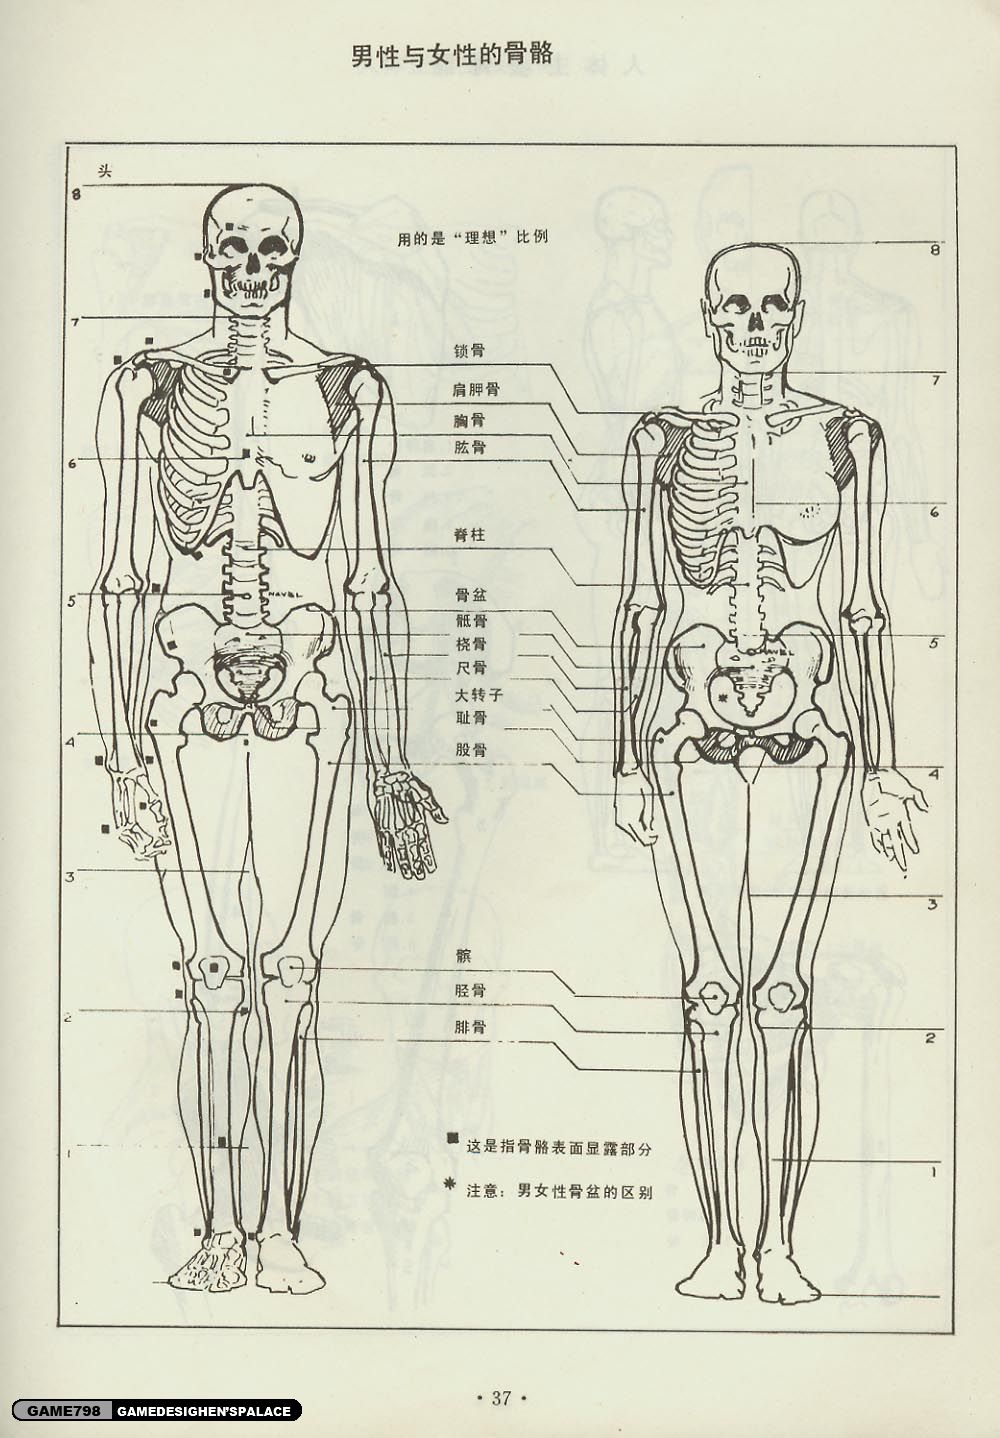 请根据所学内容,绘制人体骨骼示意图,并标注主要骨骼名称.